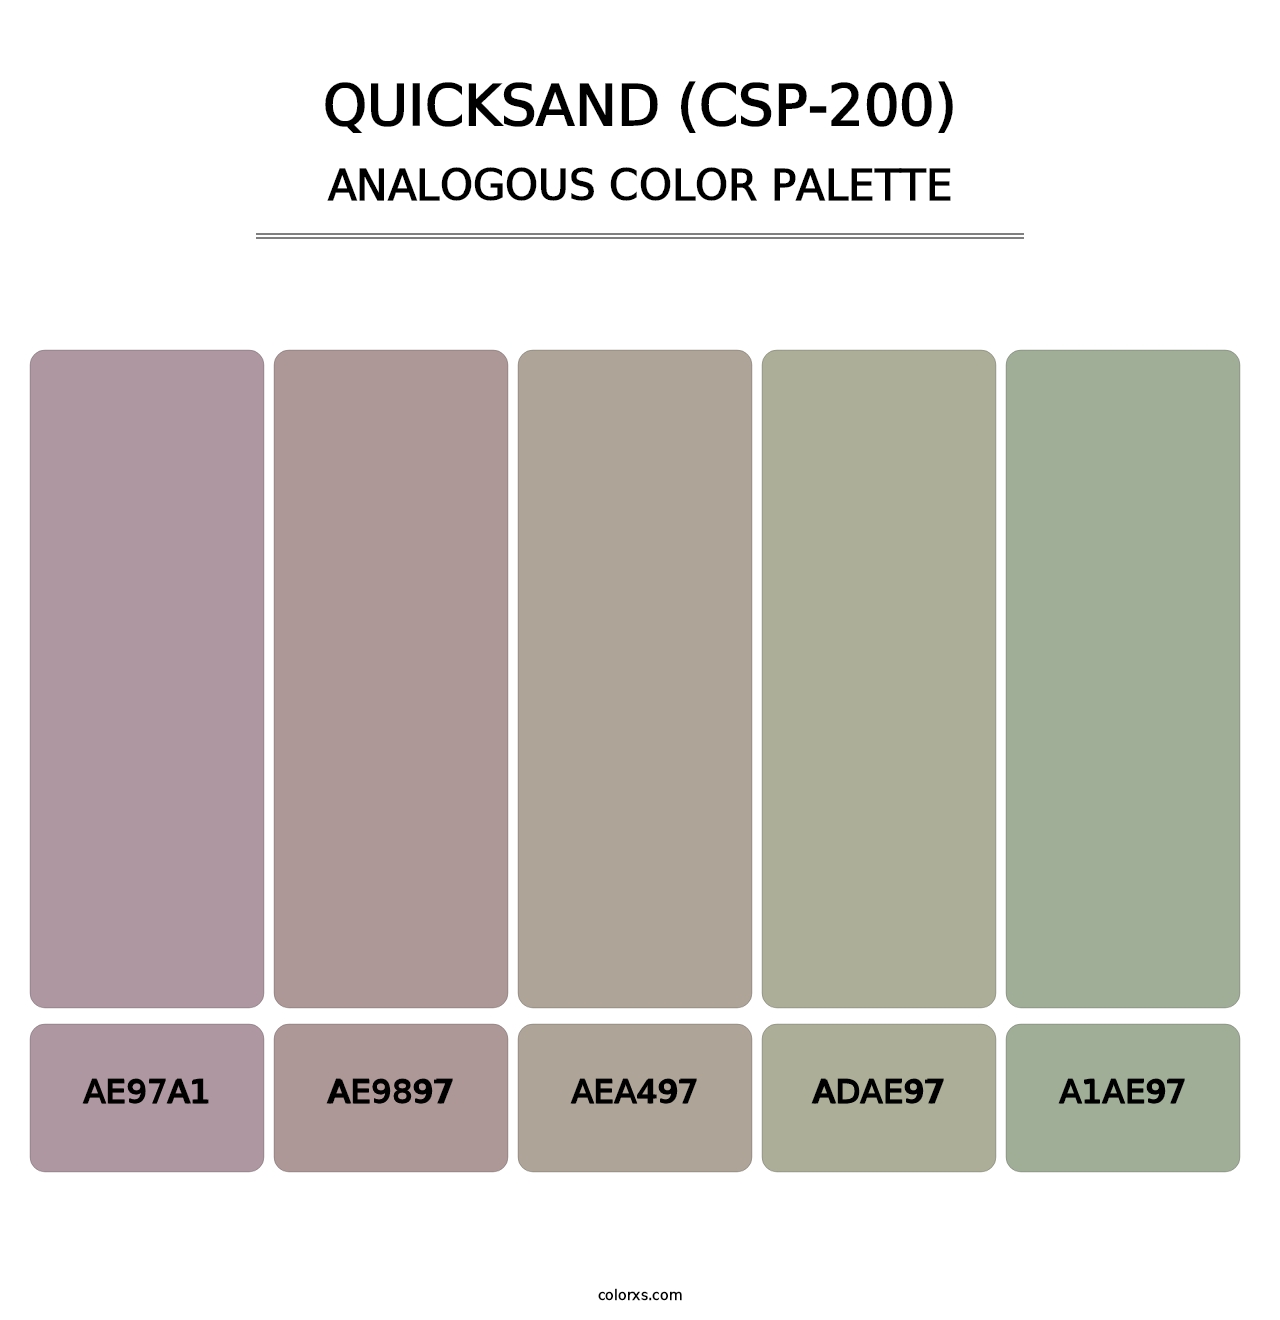 Quicksand (CSP-200) - Analogous Color Palette